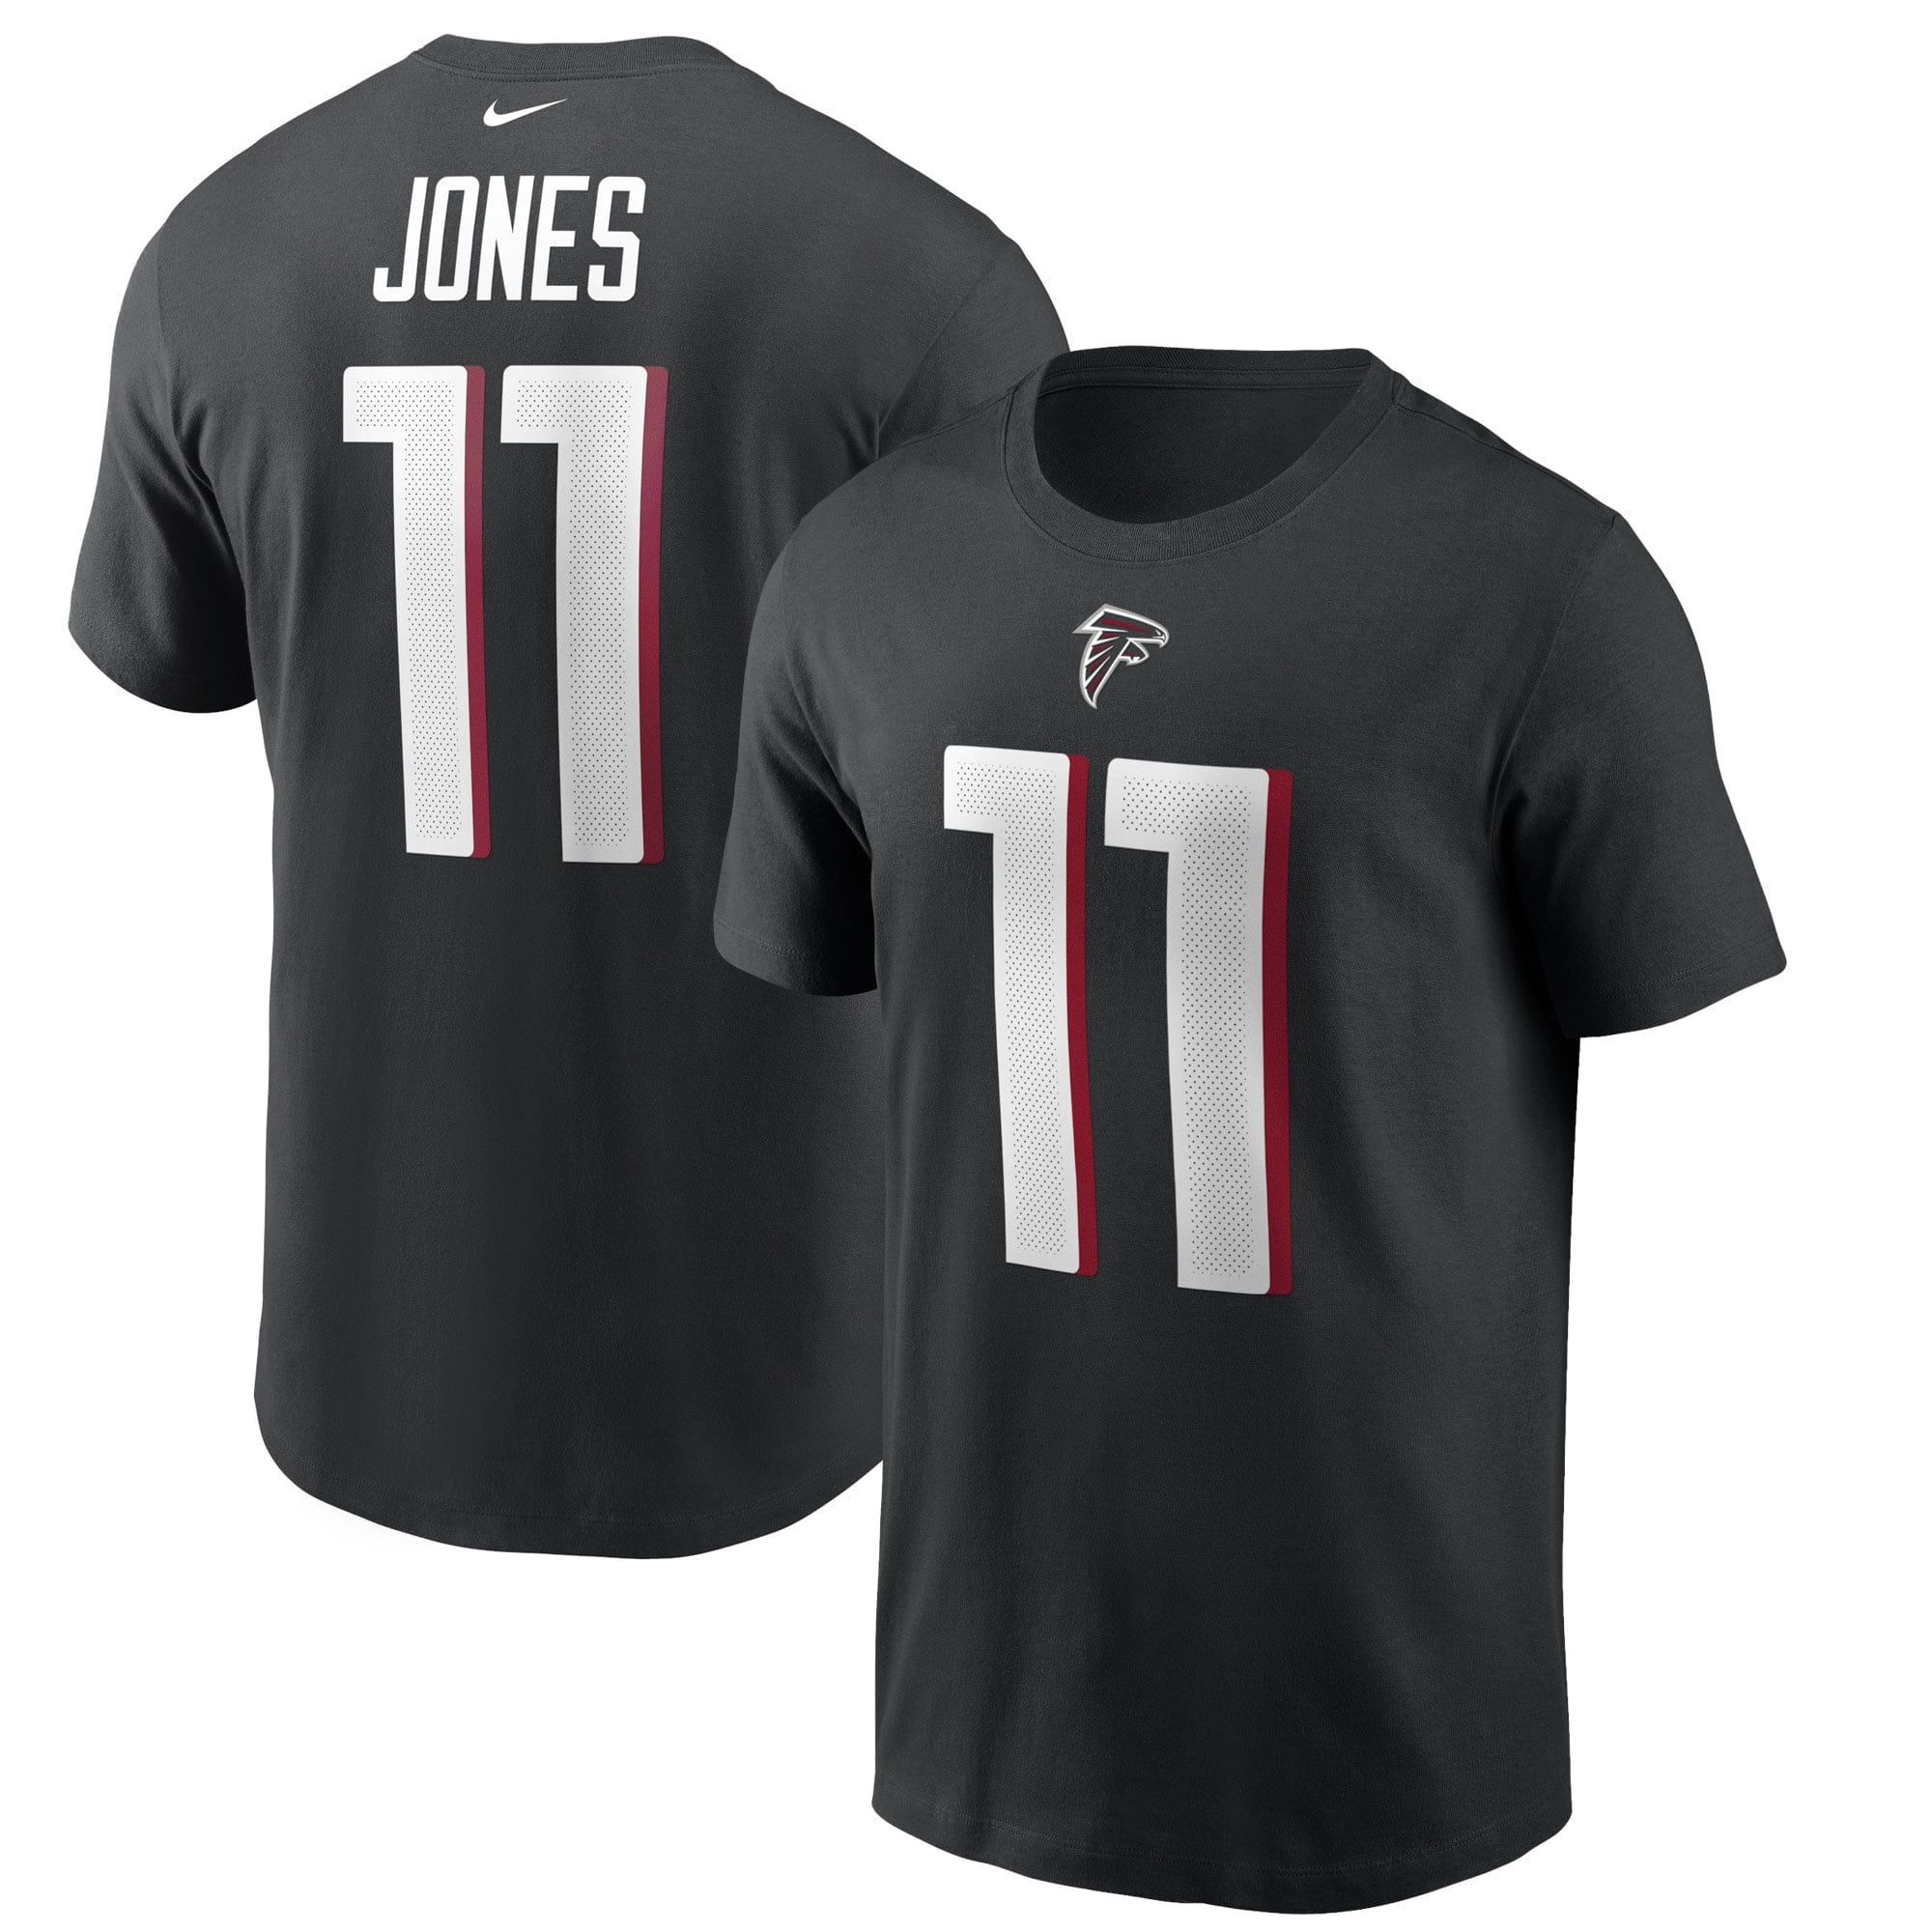 julio jones jersey number